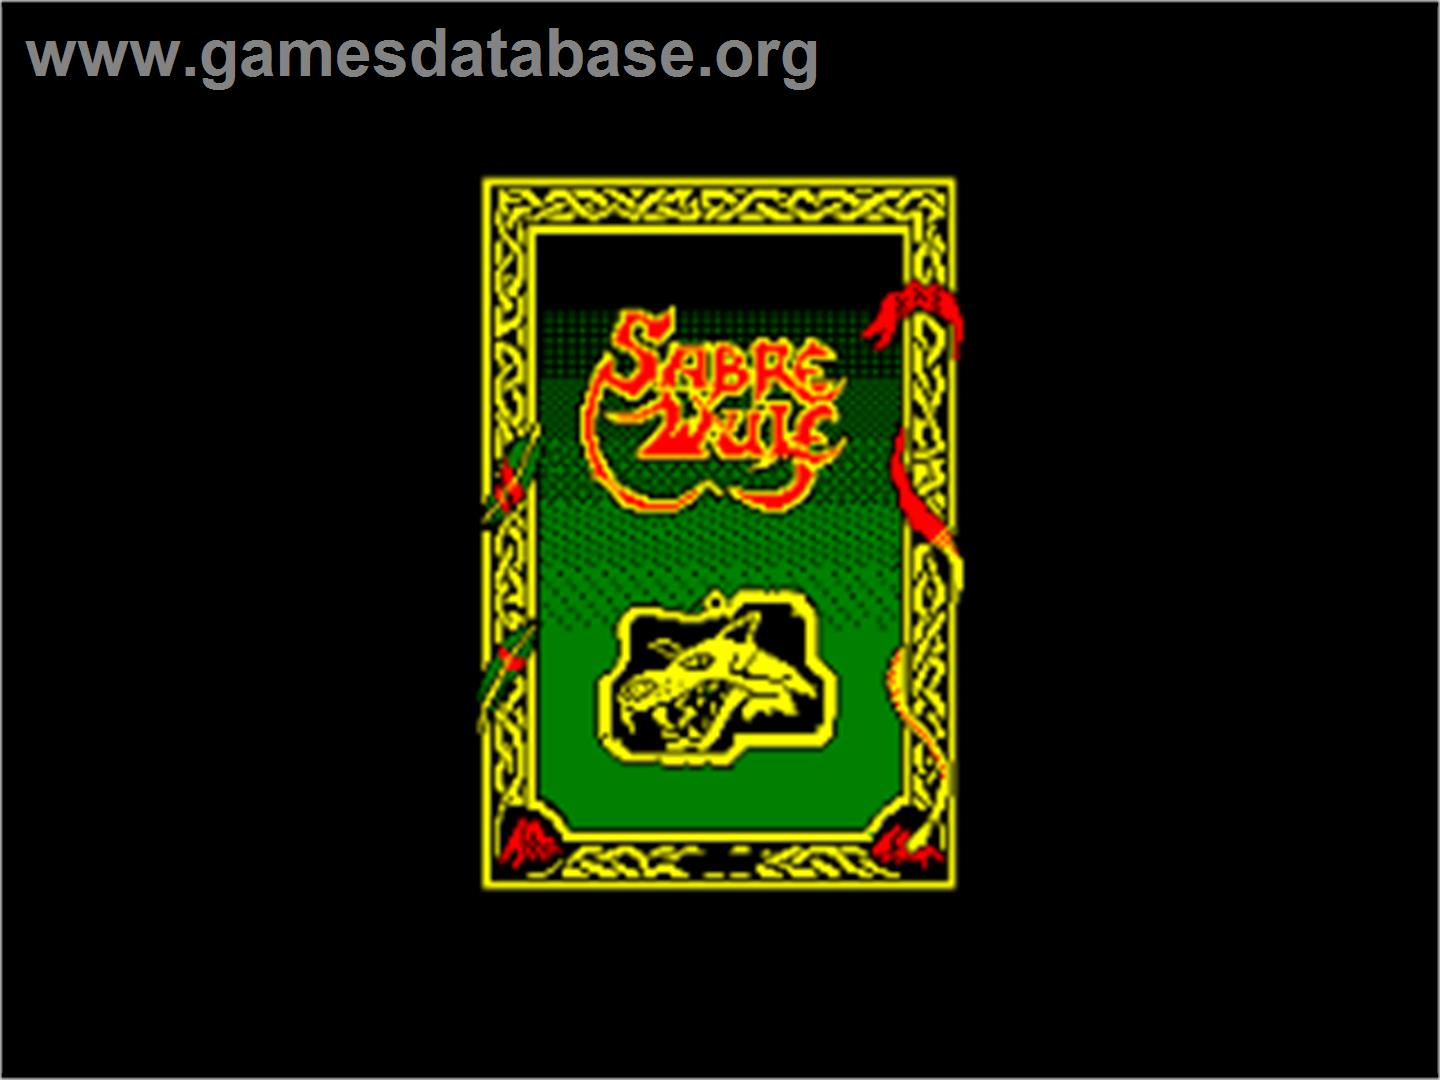 Sabre Wulf - Amstrad CPC - Artwork - Title Screen